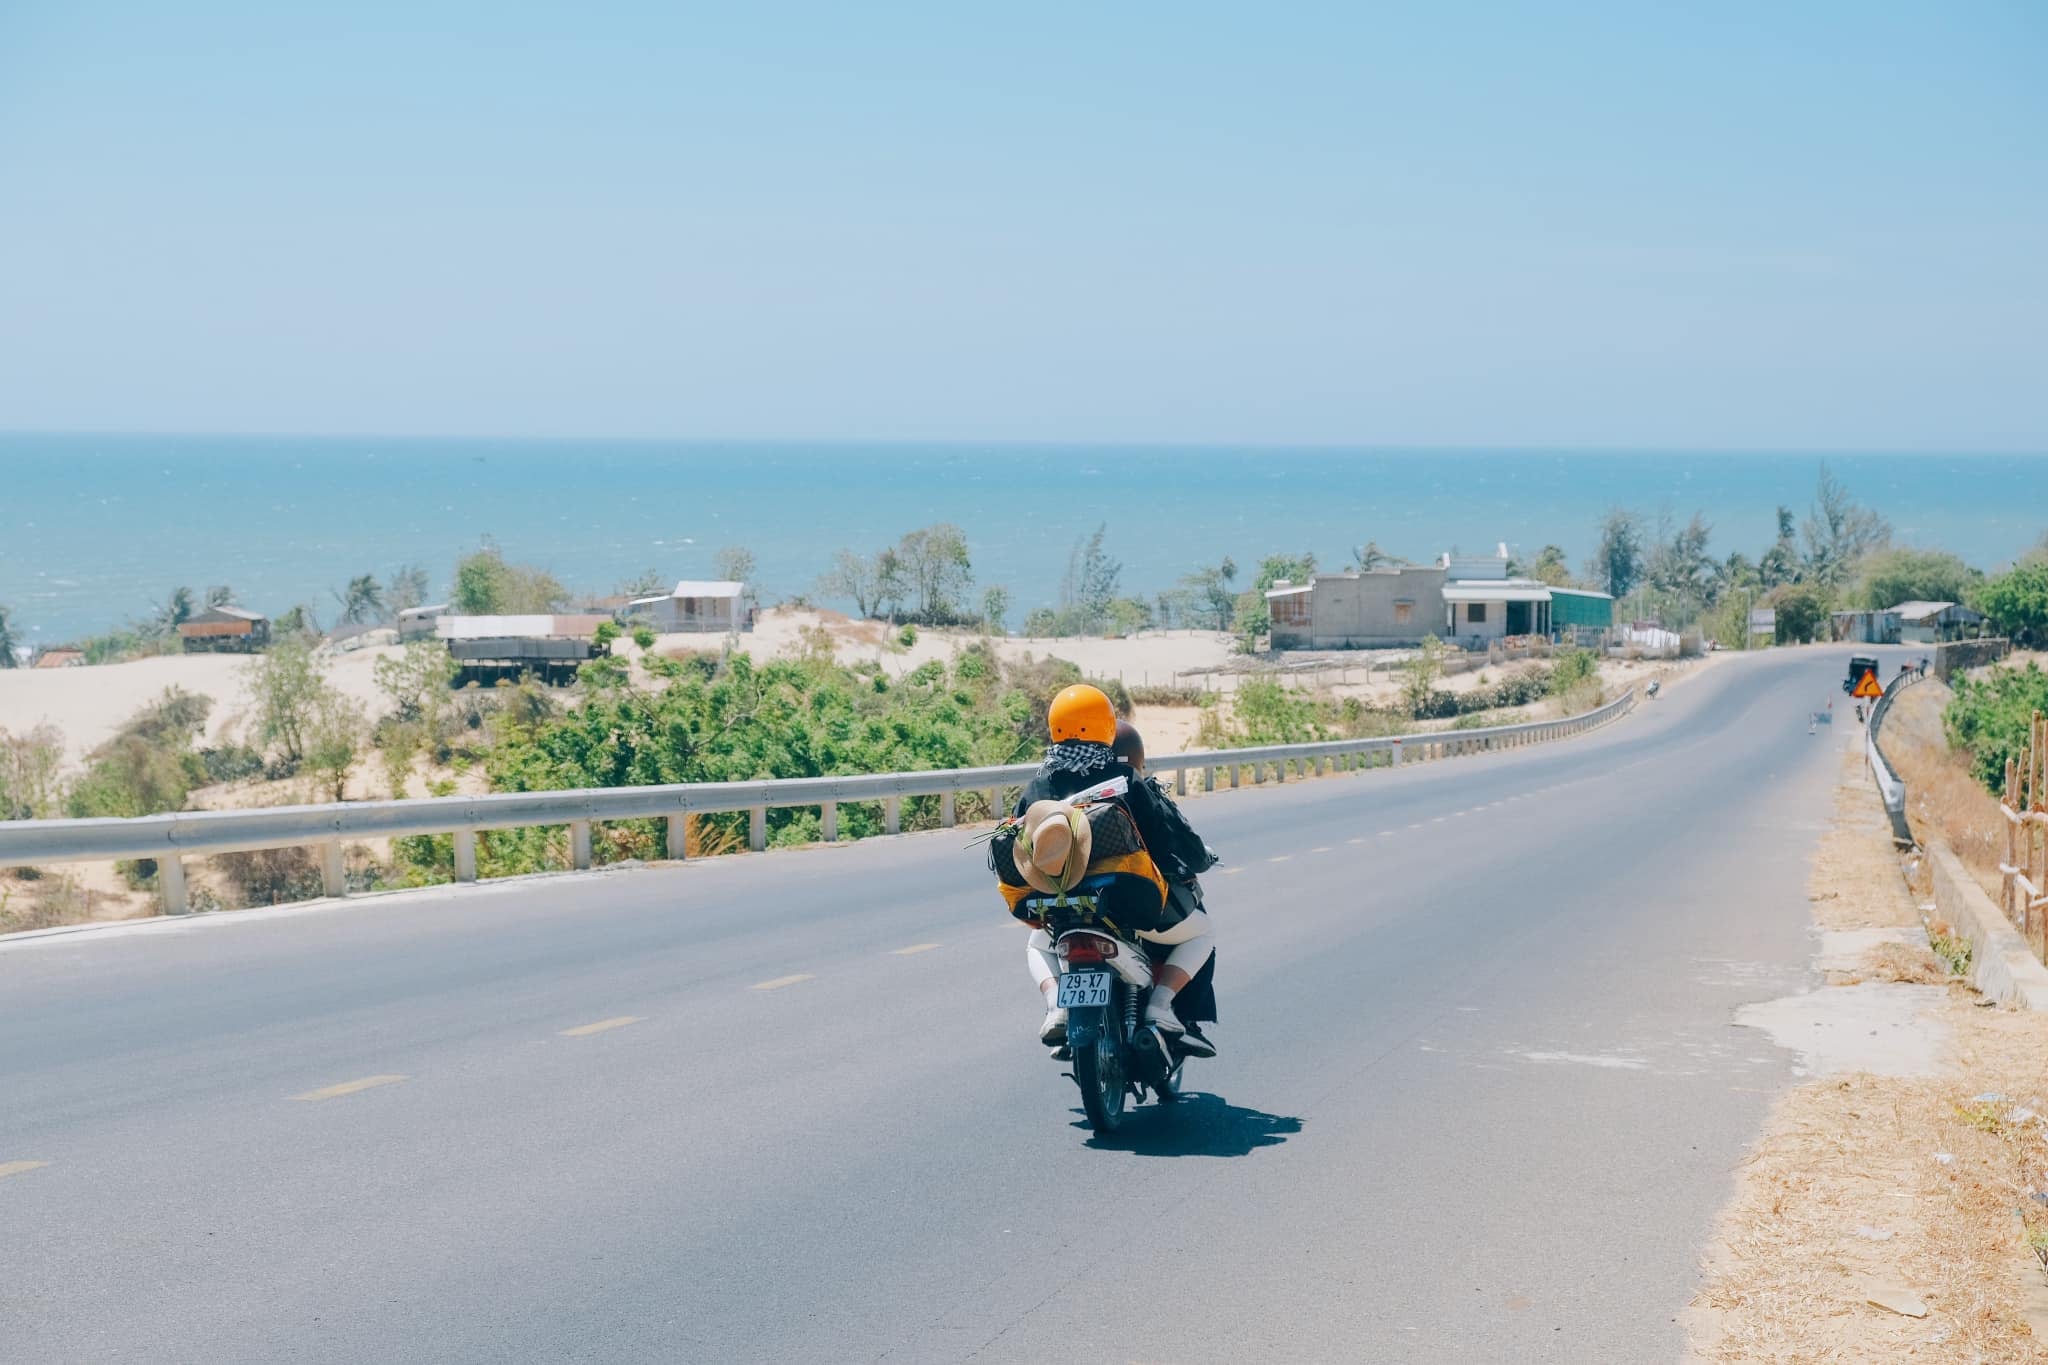 Hãy trải nghiệm cảm giác tự do đầy hứng khởi khi đi phượt xuyên Việt bằng xe máy. Điều gì tuyệt vời hơn khi được tự quyết định lộ trình hành trình, khám phá những vùng đất mới lạ cùng những người bạn thân thiết. Hãy thử ngay!